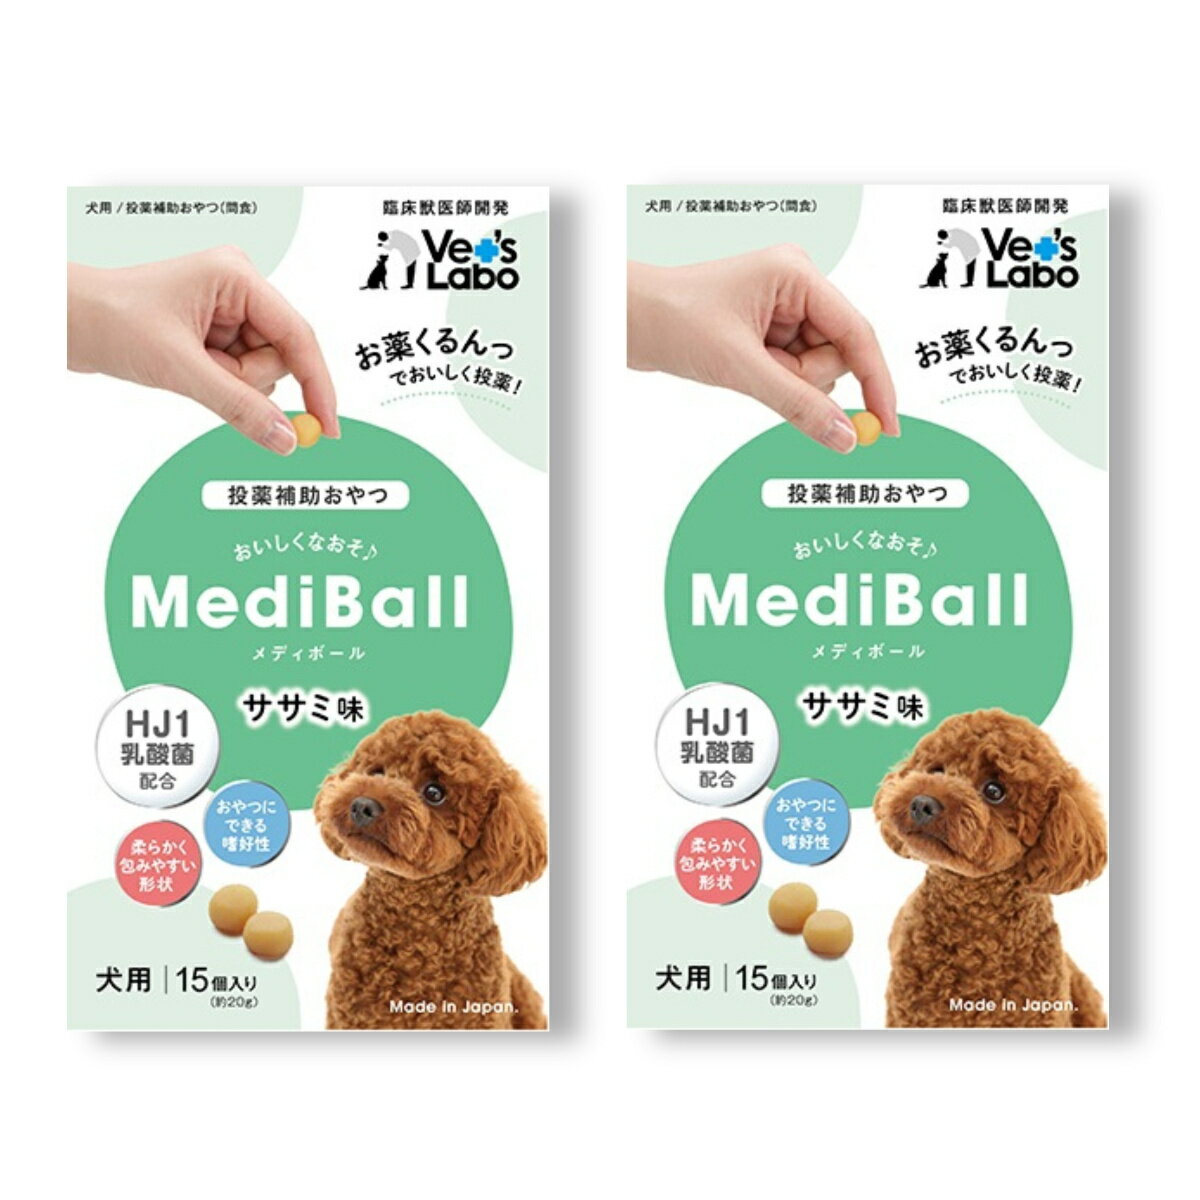 メディボール MEDIBALL ささみ味 犬用 15個入 ×2袋セット 送料無料